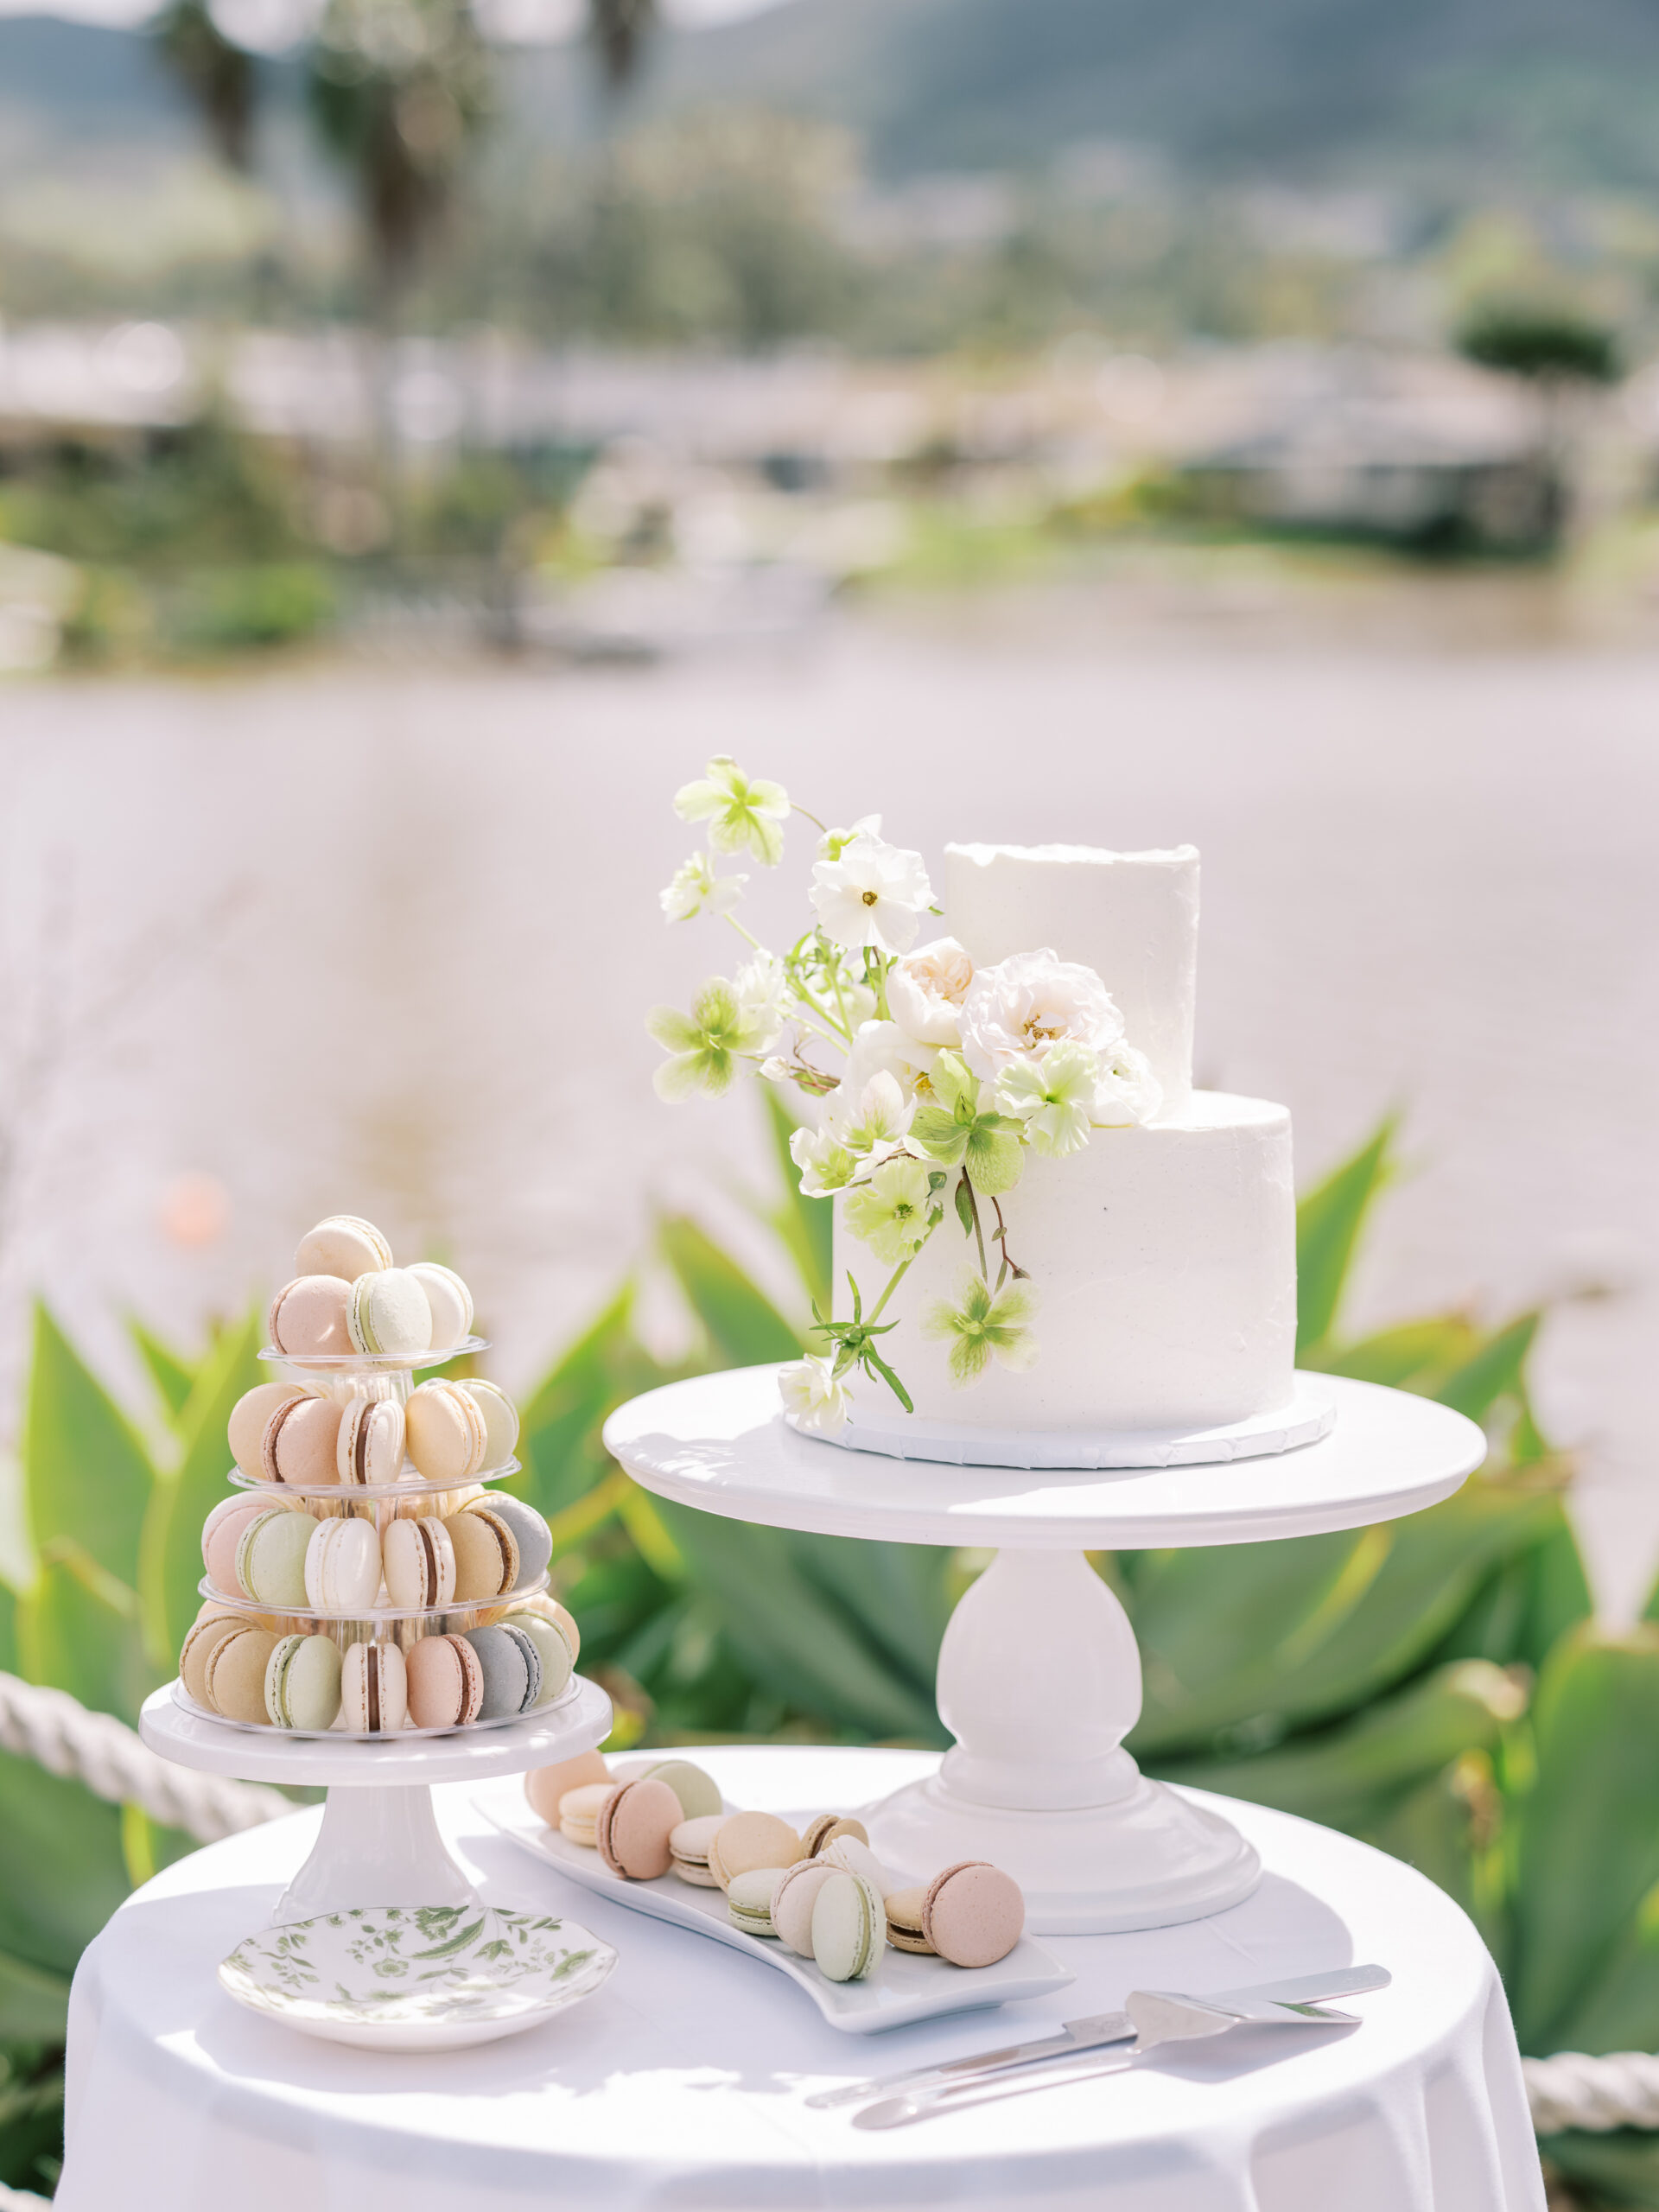 Wedding Cake and Macarons